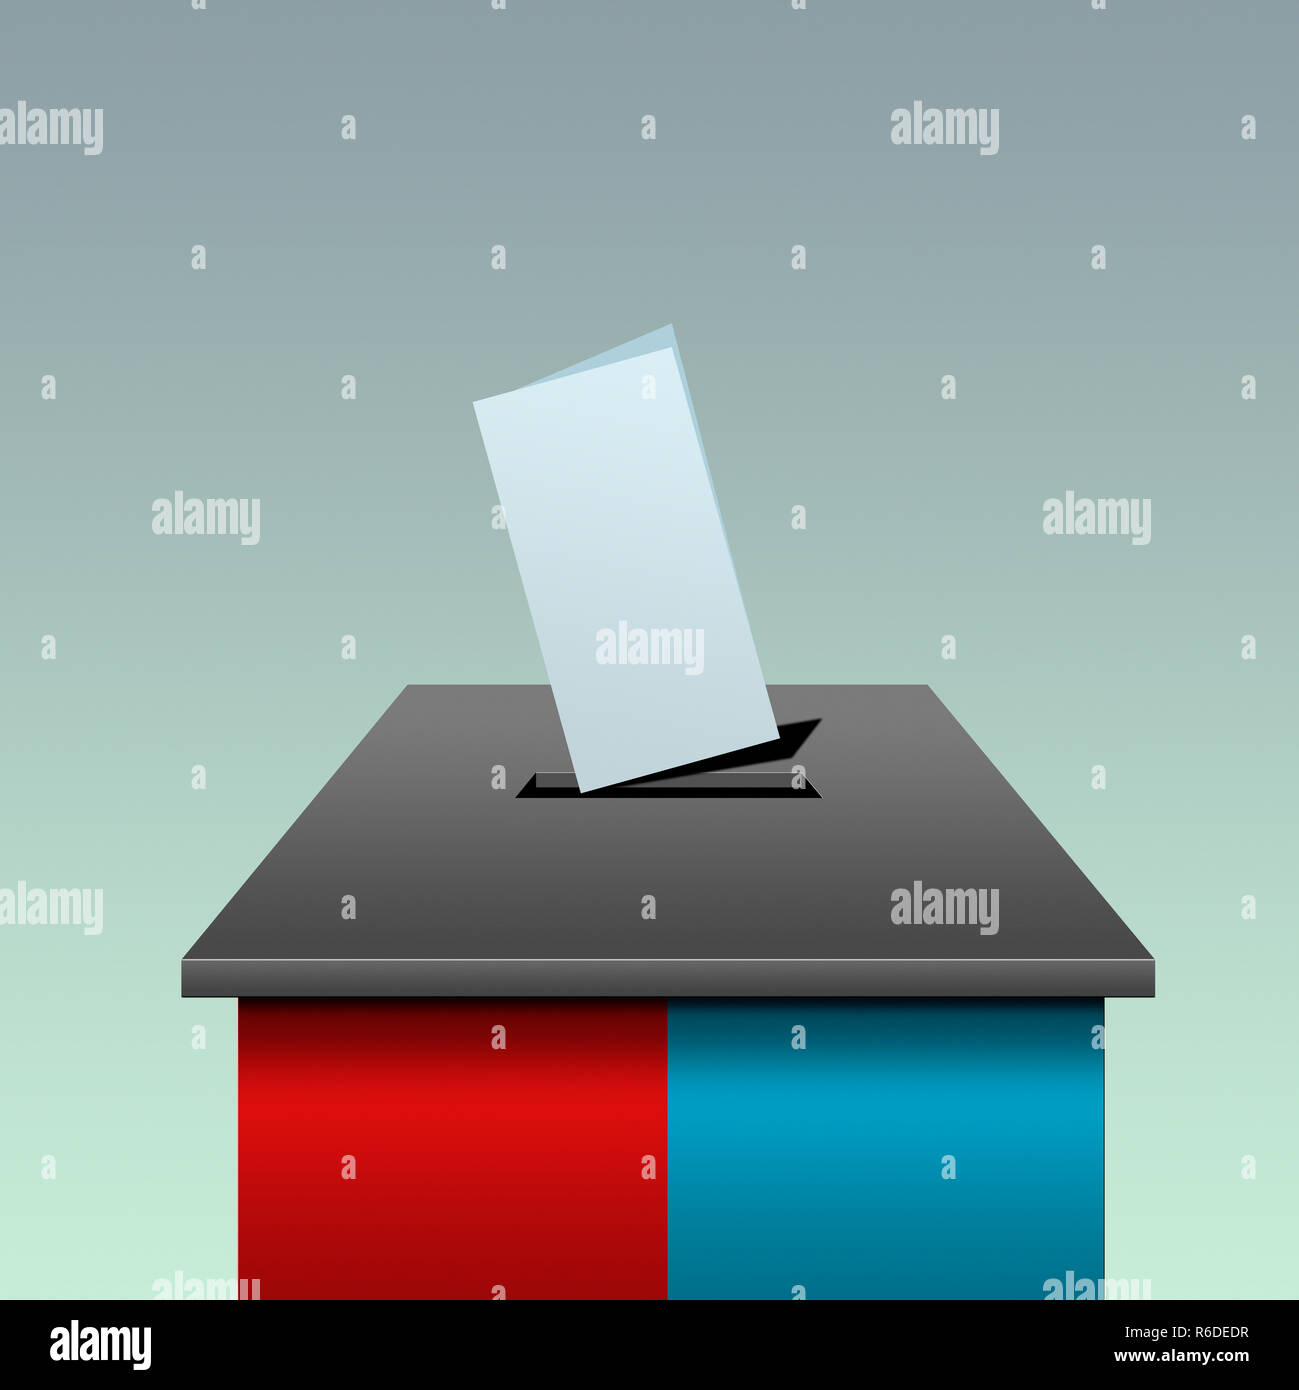 Digitales Bild von Wahlurne in den Farben Rot und Blau, Abstimmung Slip in Steckplatz Stockfoto